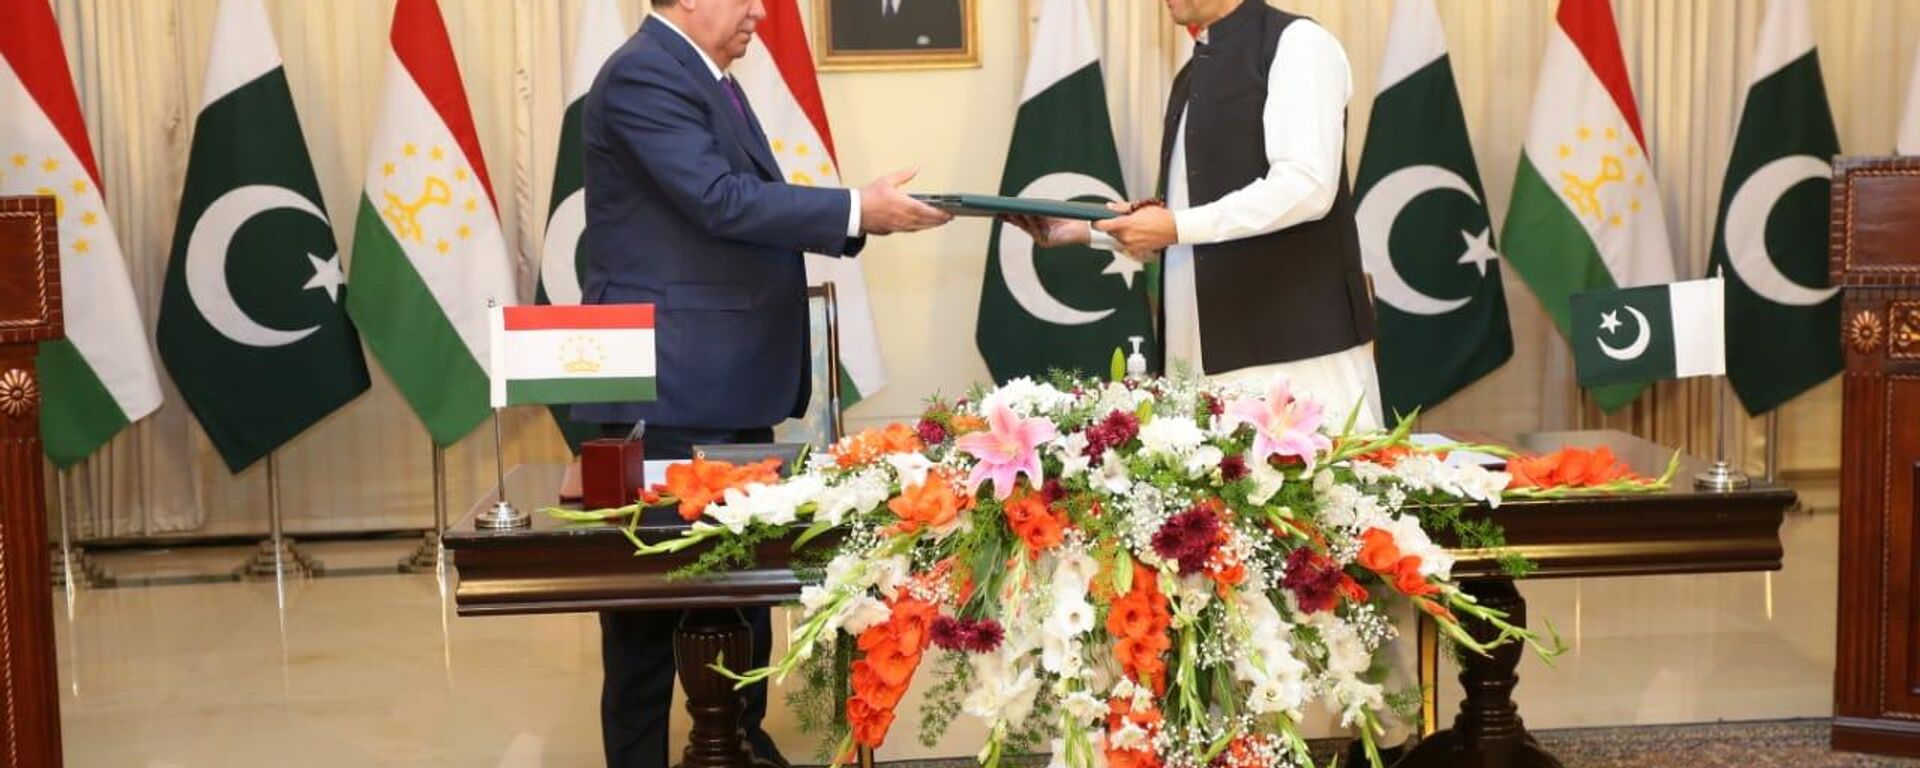  Подписания соглашений / меморандумов о взаимопонимании между Пакистаном и Таджикистаном - Sputnik Таджикистан, 1920, 02.06.2021